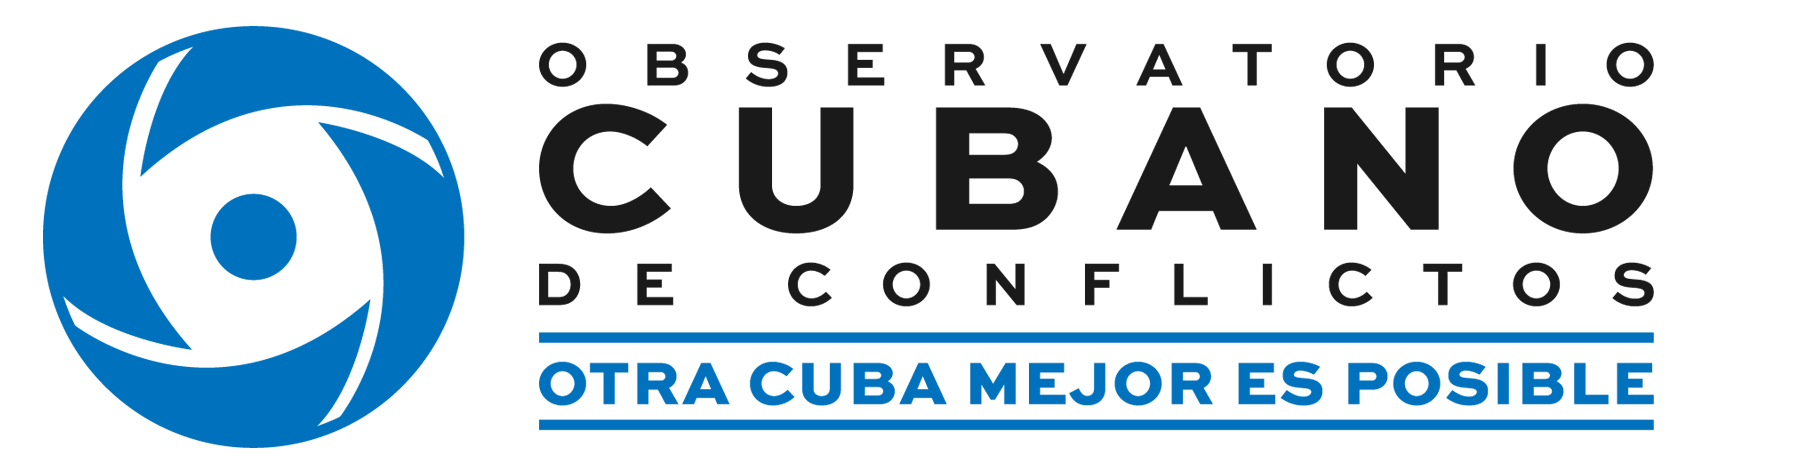 Observatorio Cubano de Conflictos